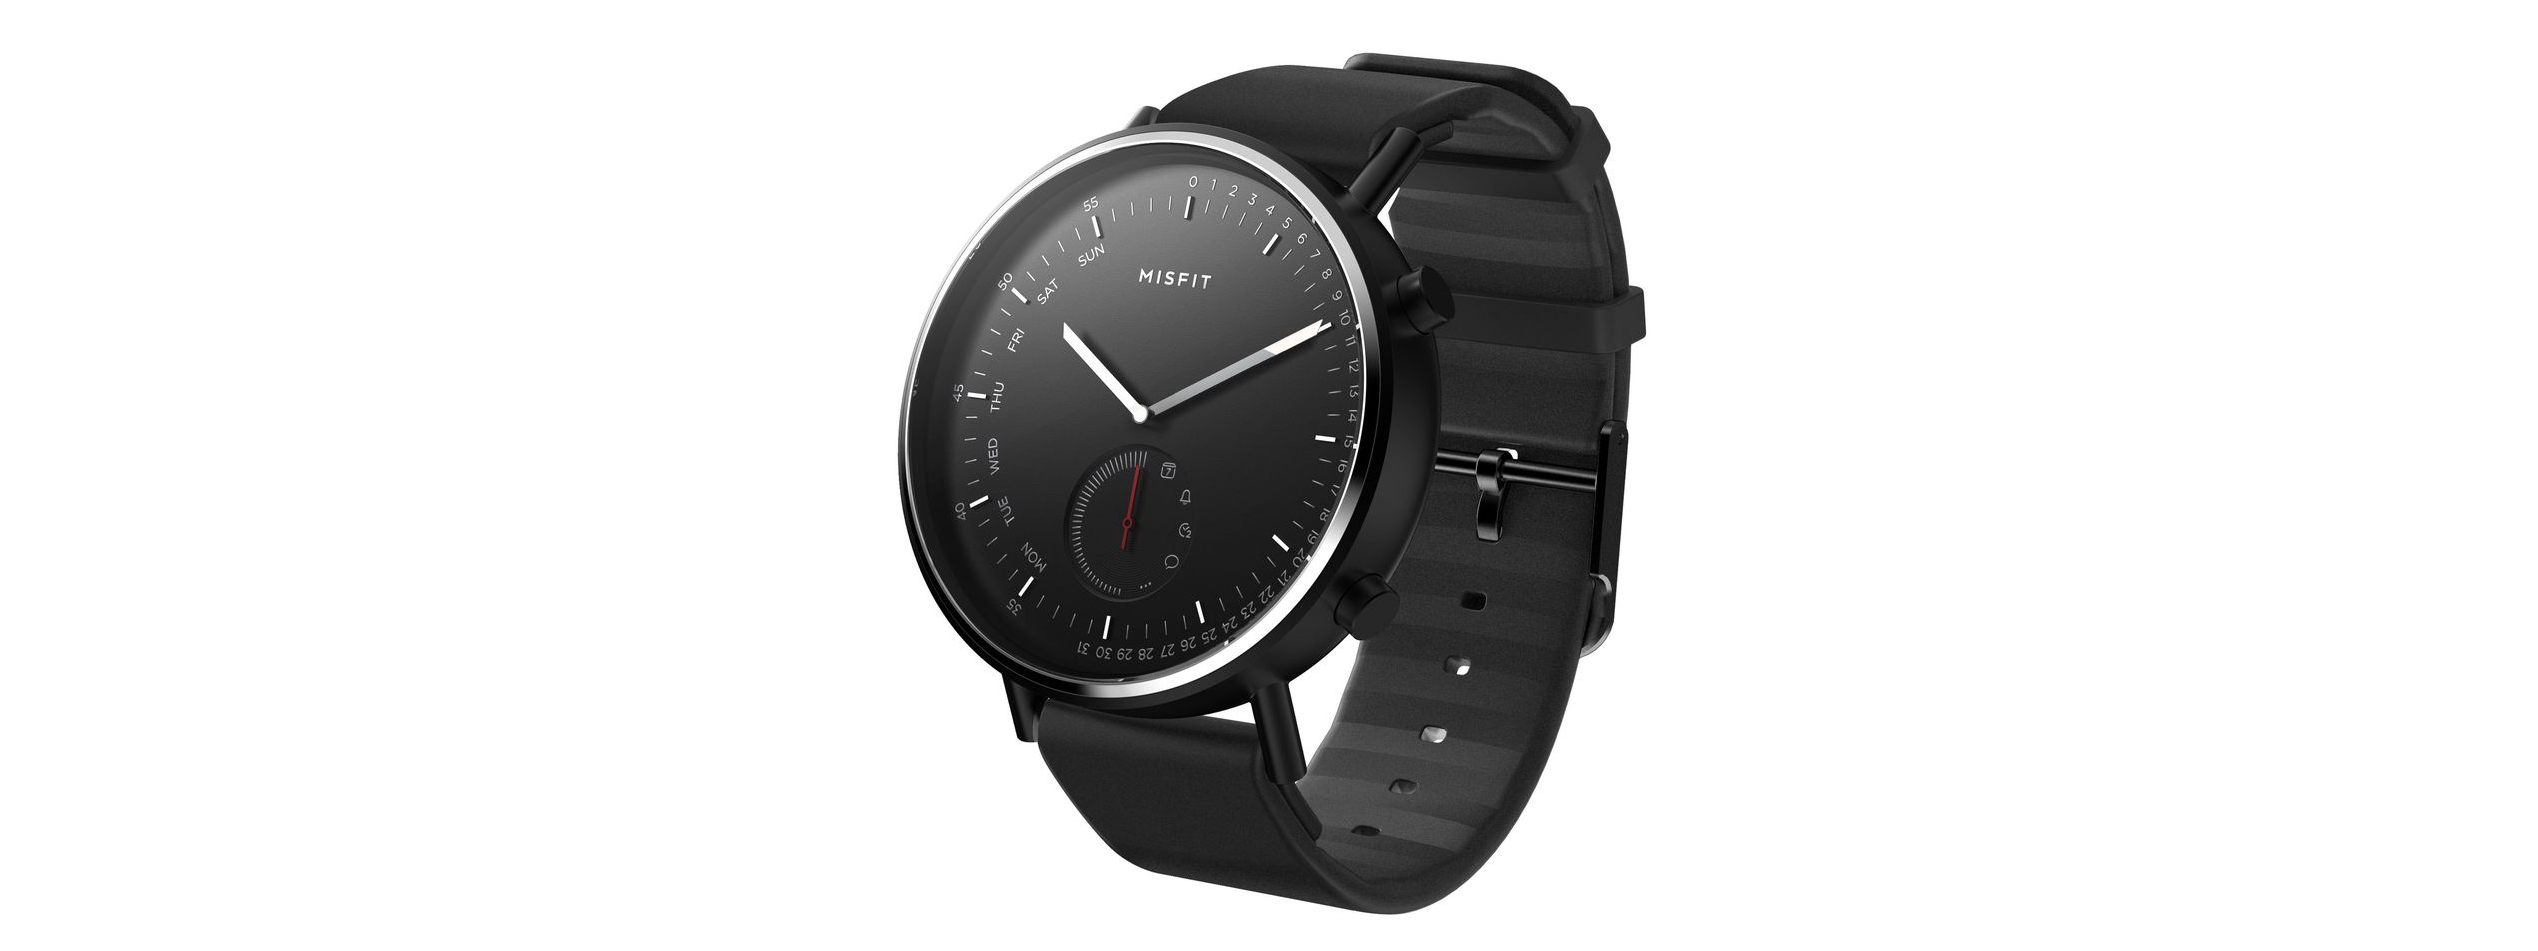 Misfit Command là đồng hồ lai có thể theo dõi sức khỏe và nhận thông báo, giá 149 USD